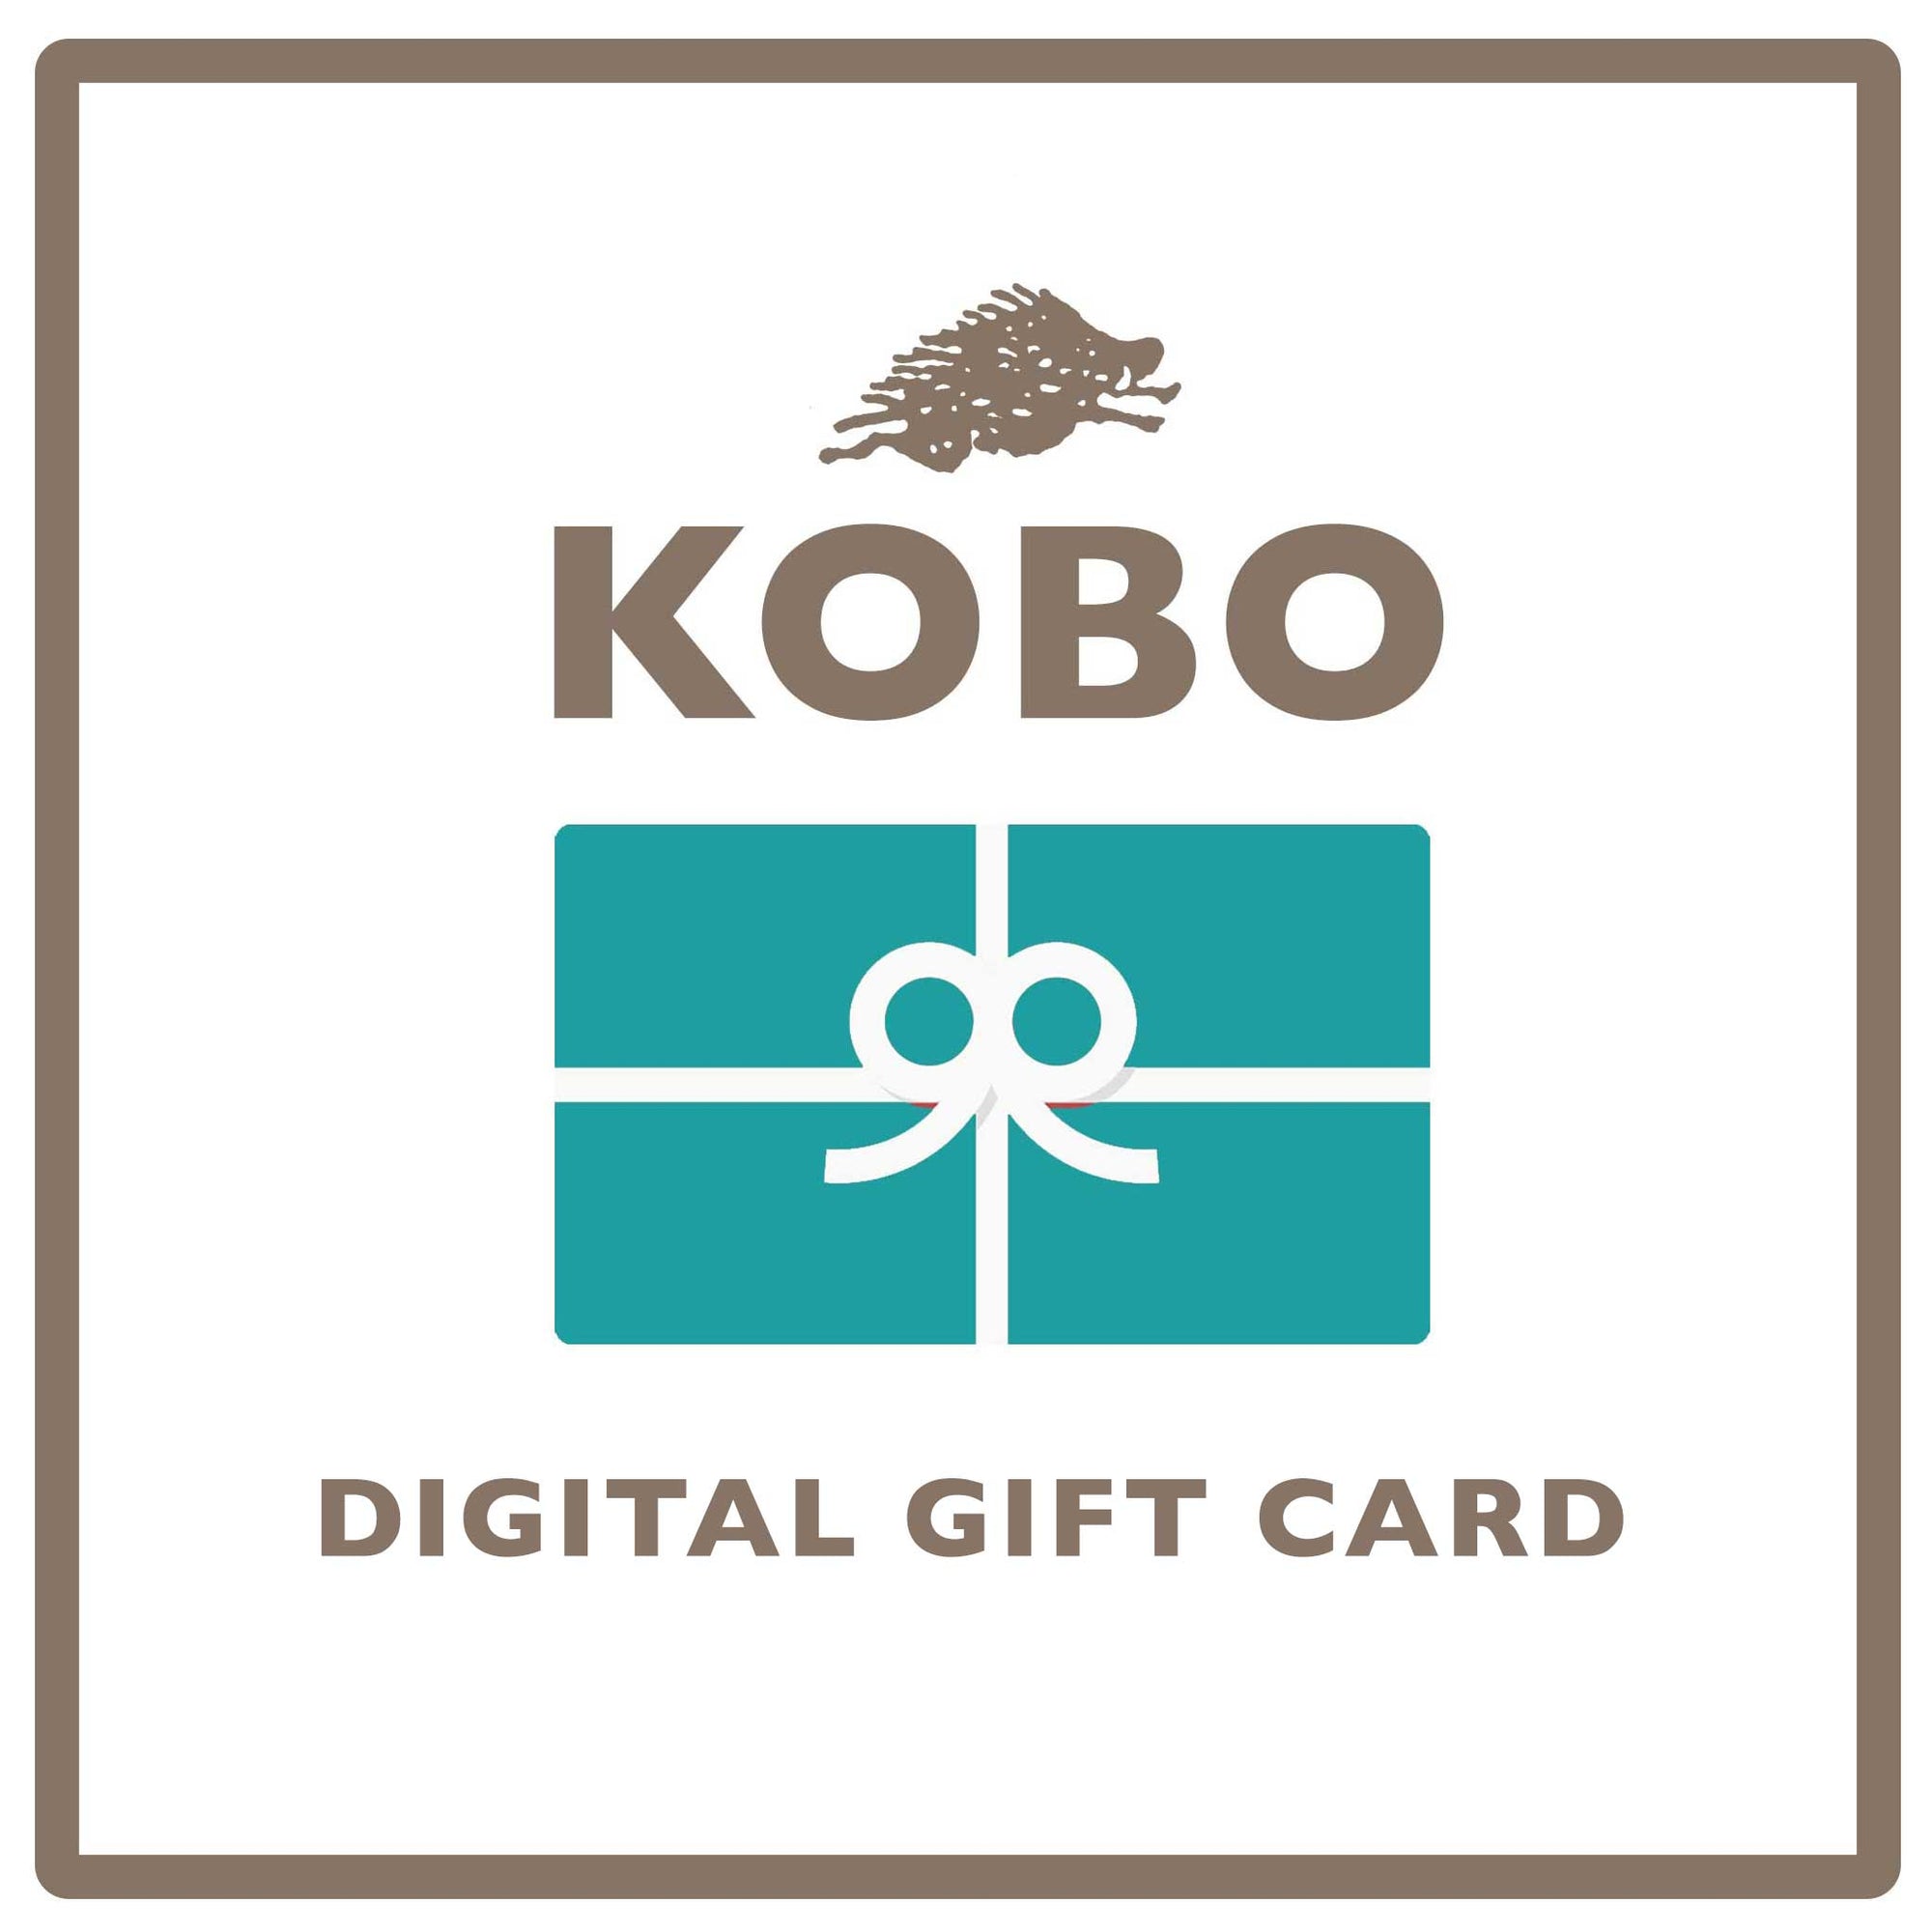 KOBO Digital Gift Card